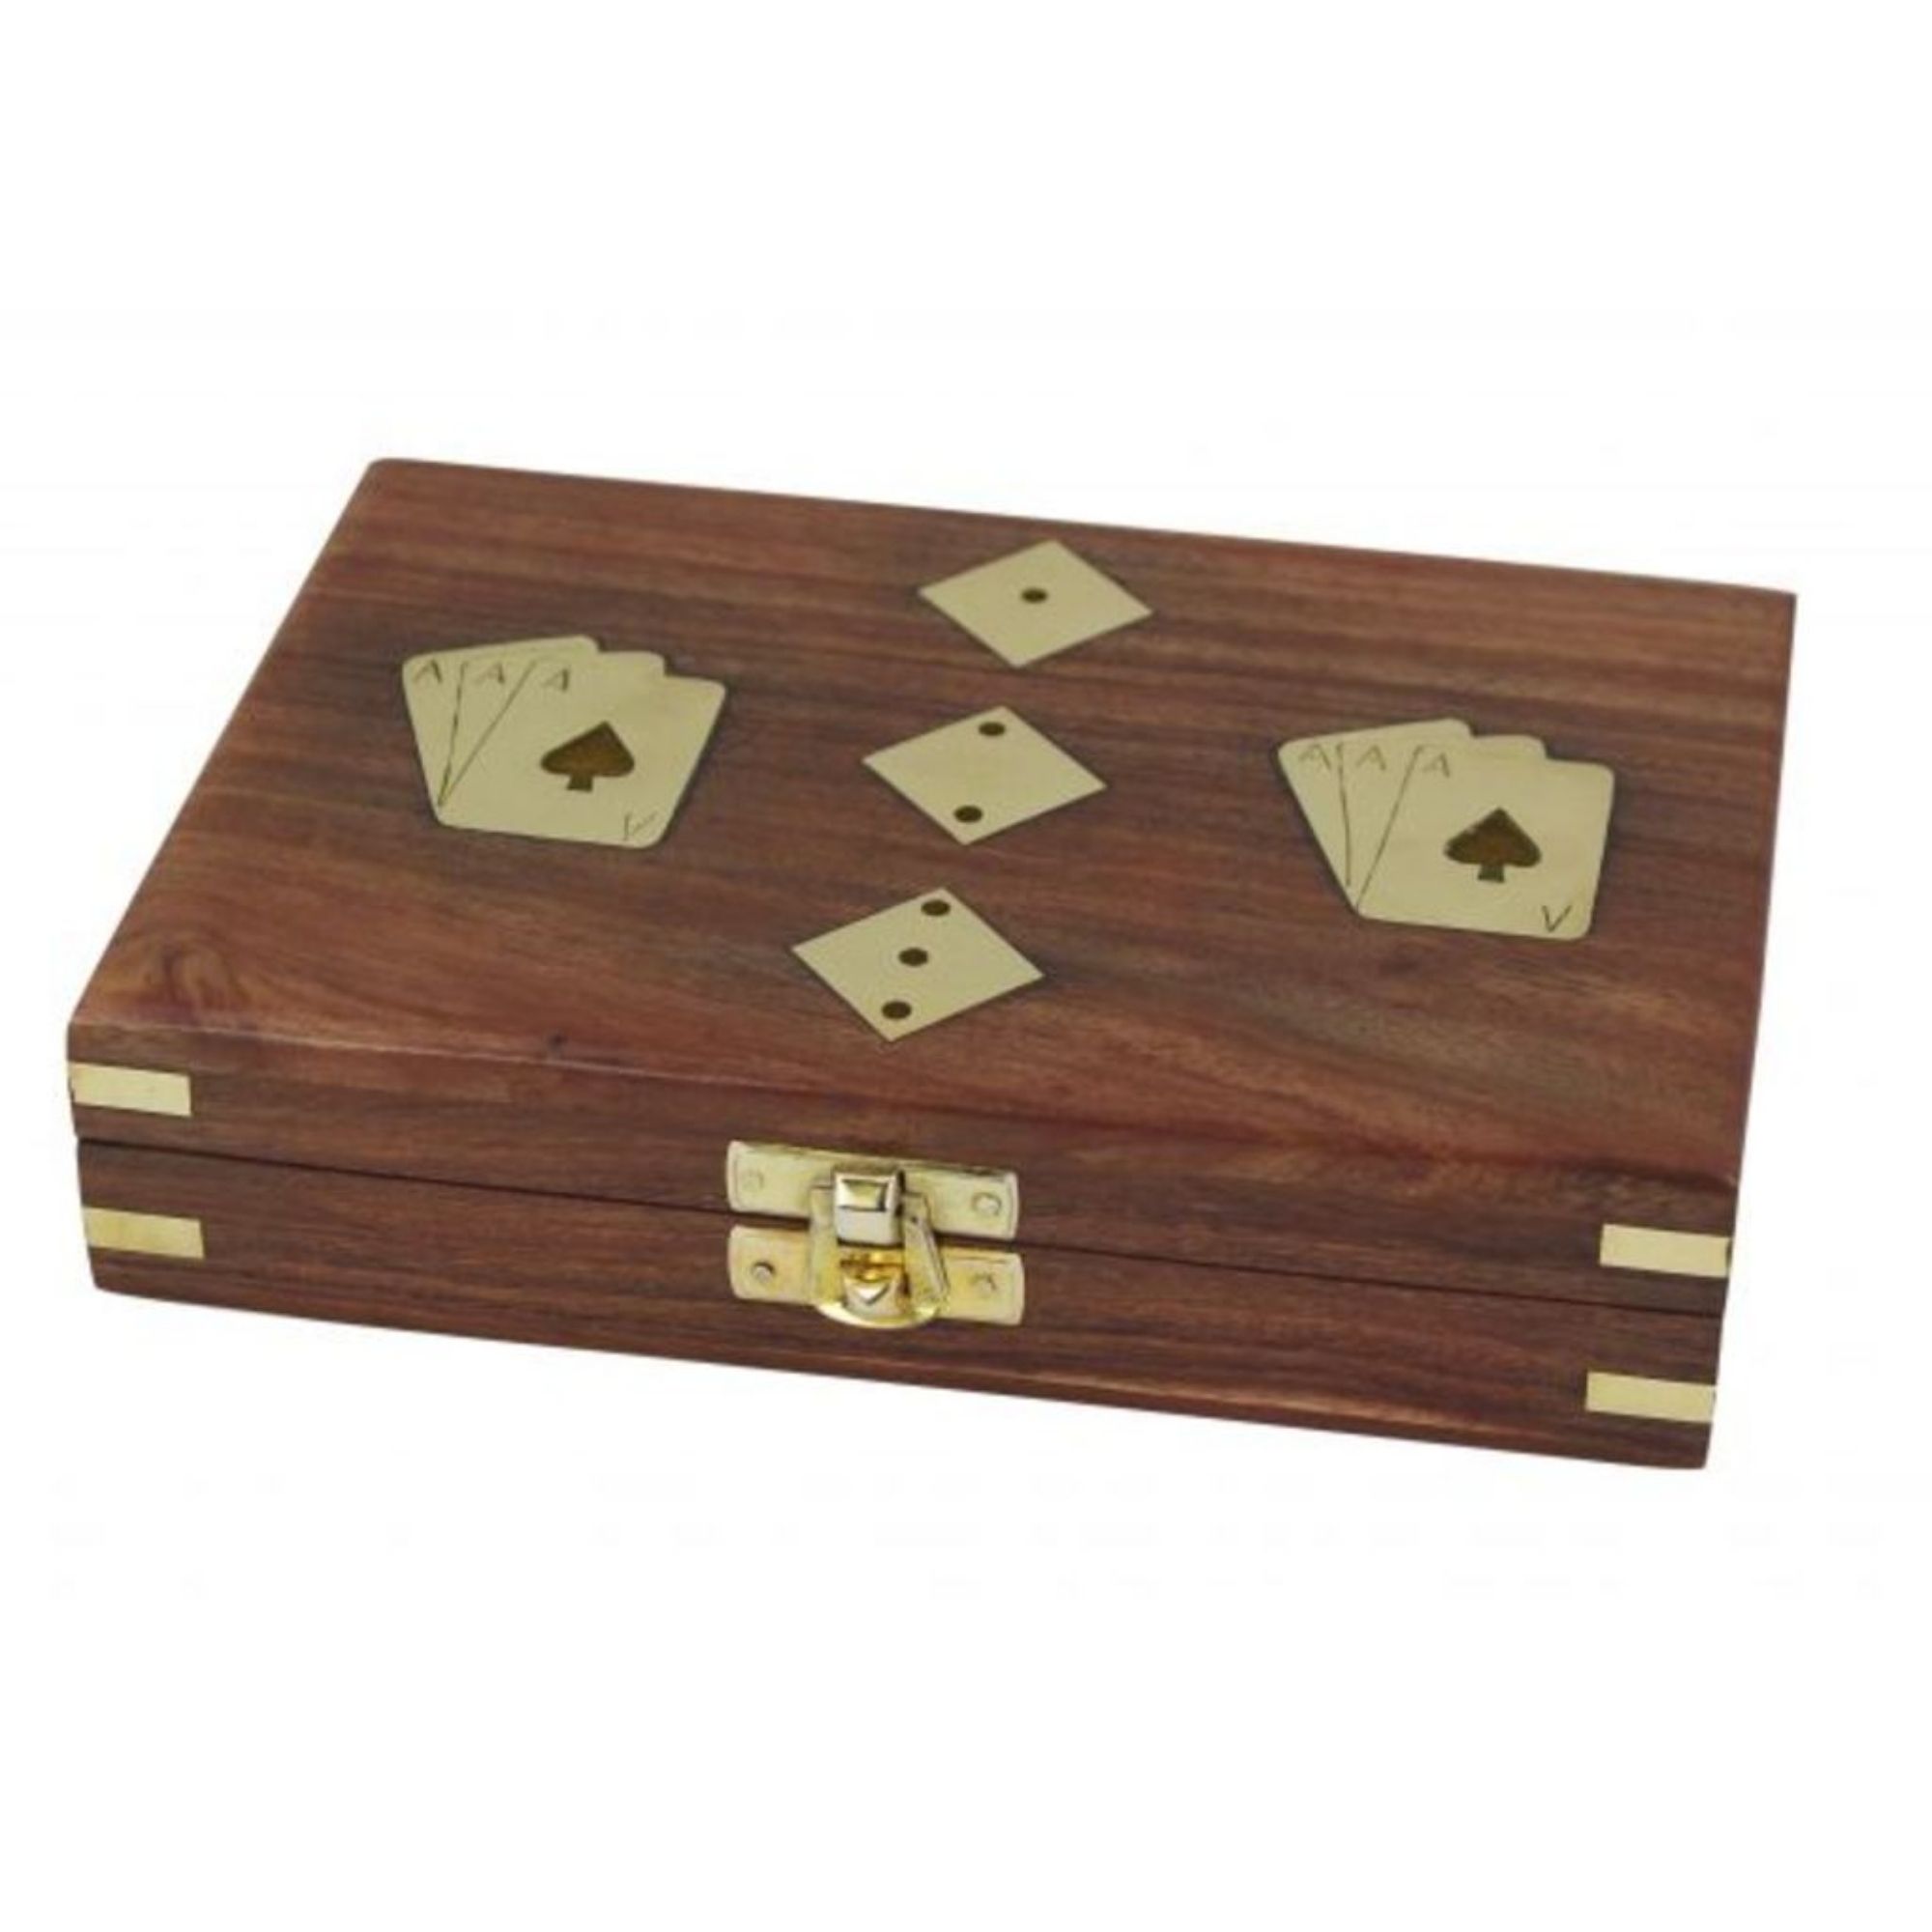 Würfel und Spielkarten in Holzbox